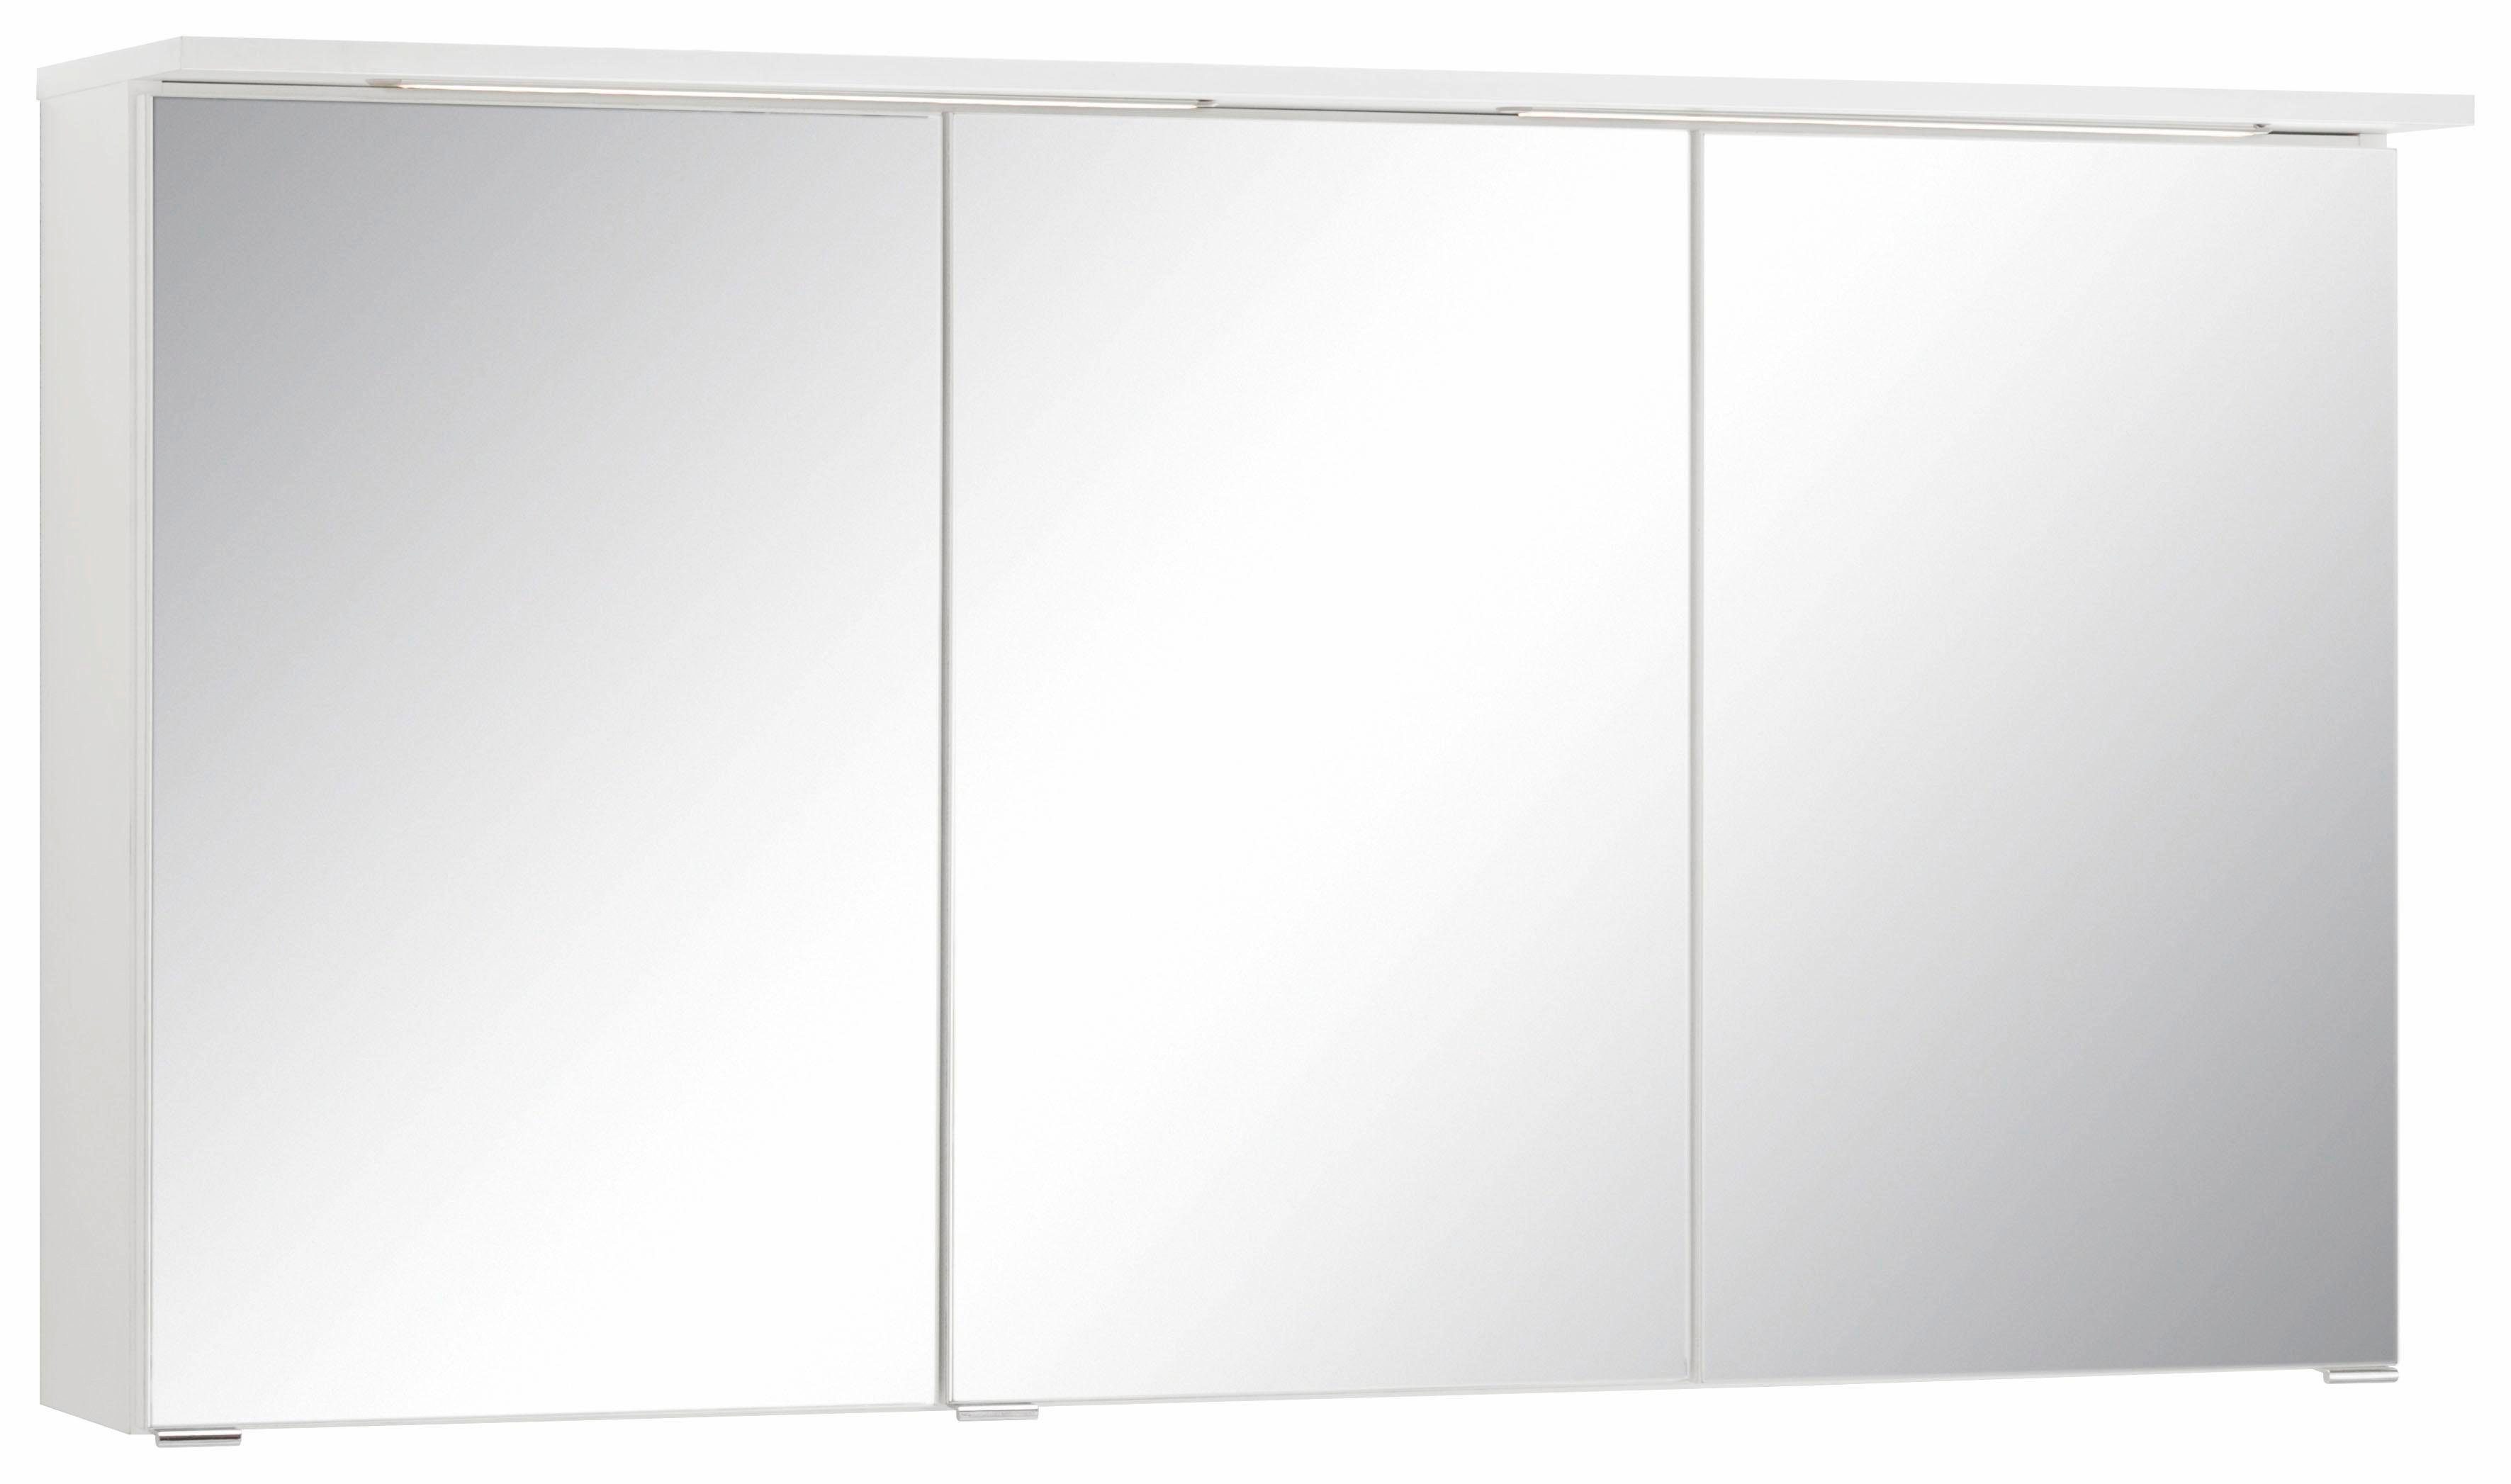 HELD MÖBEL Spiegelschrank Ravenna Breite 120 cm, mit LED Beleuchtung weiß | weiß | Spiegelschränke